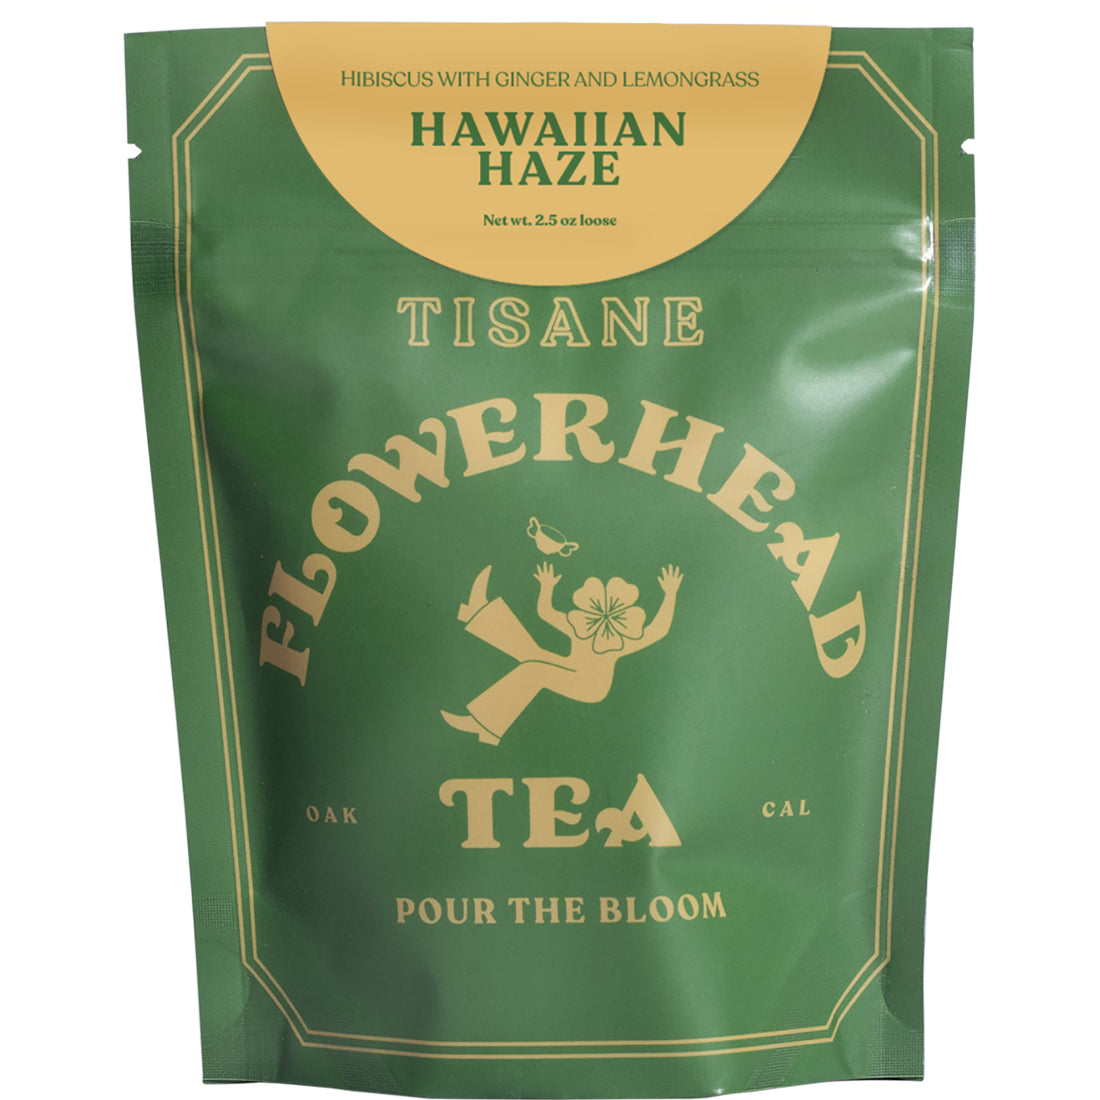 Flowerhead Tea - Hawaiian Haze FLOWERHEAD TEA 